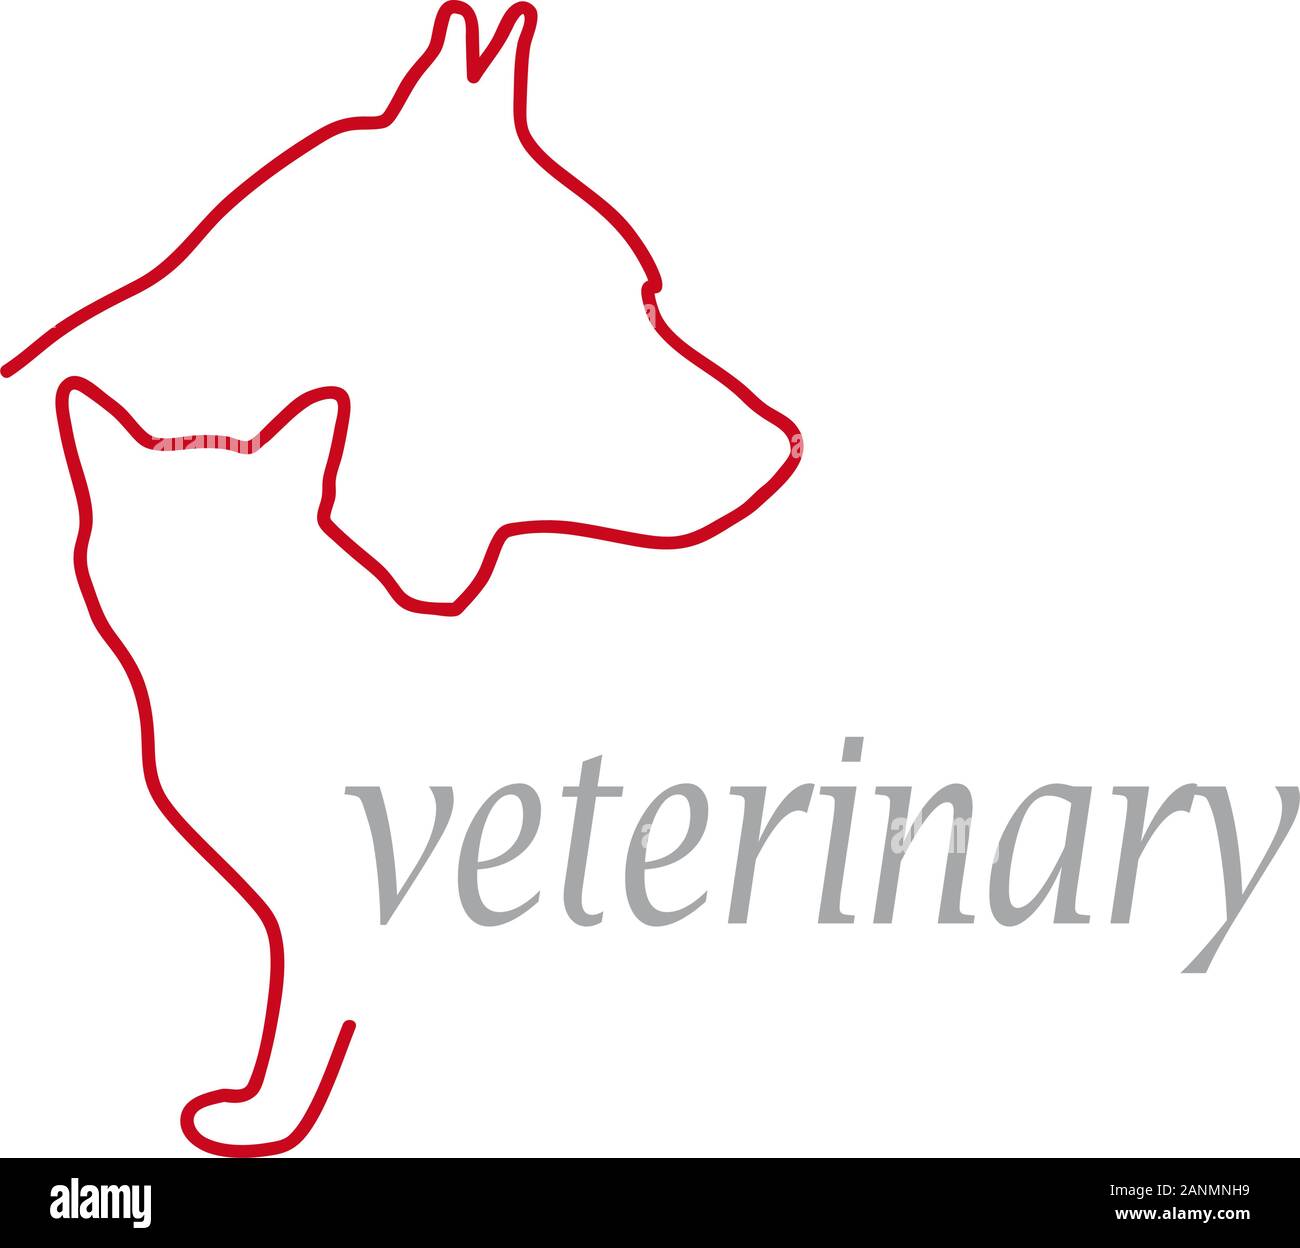 Signe vecteur vétérinaire, chien et chat Illustration de Vecteur